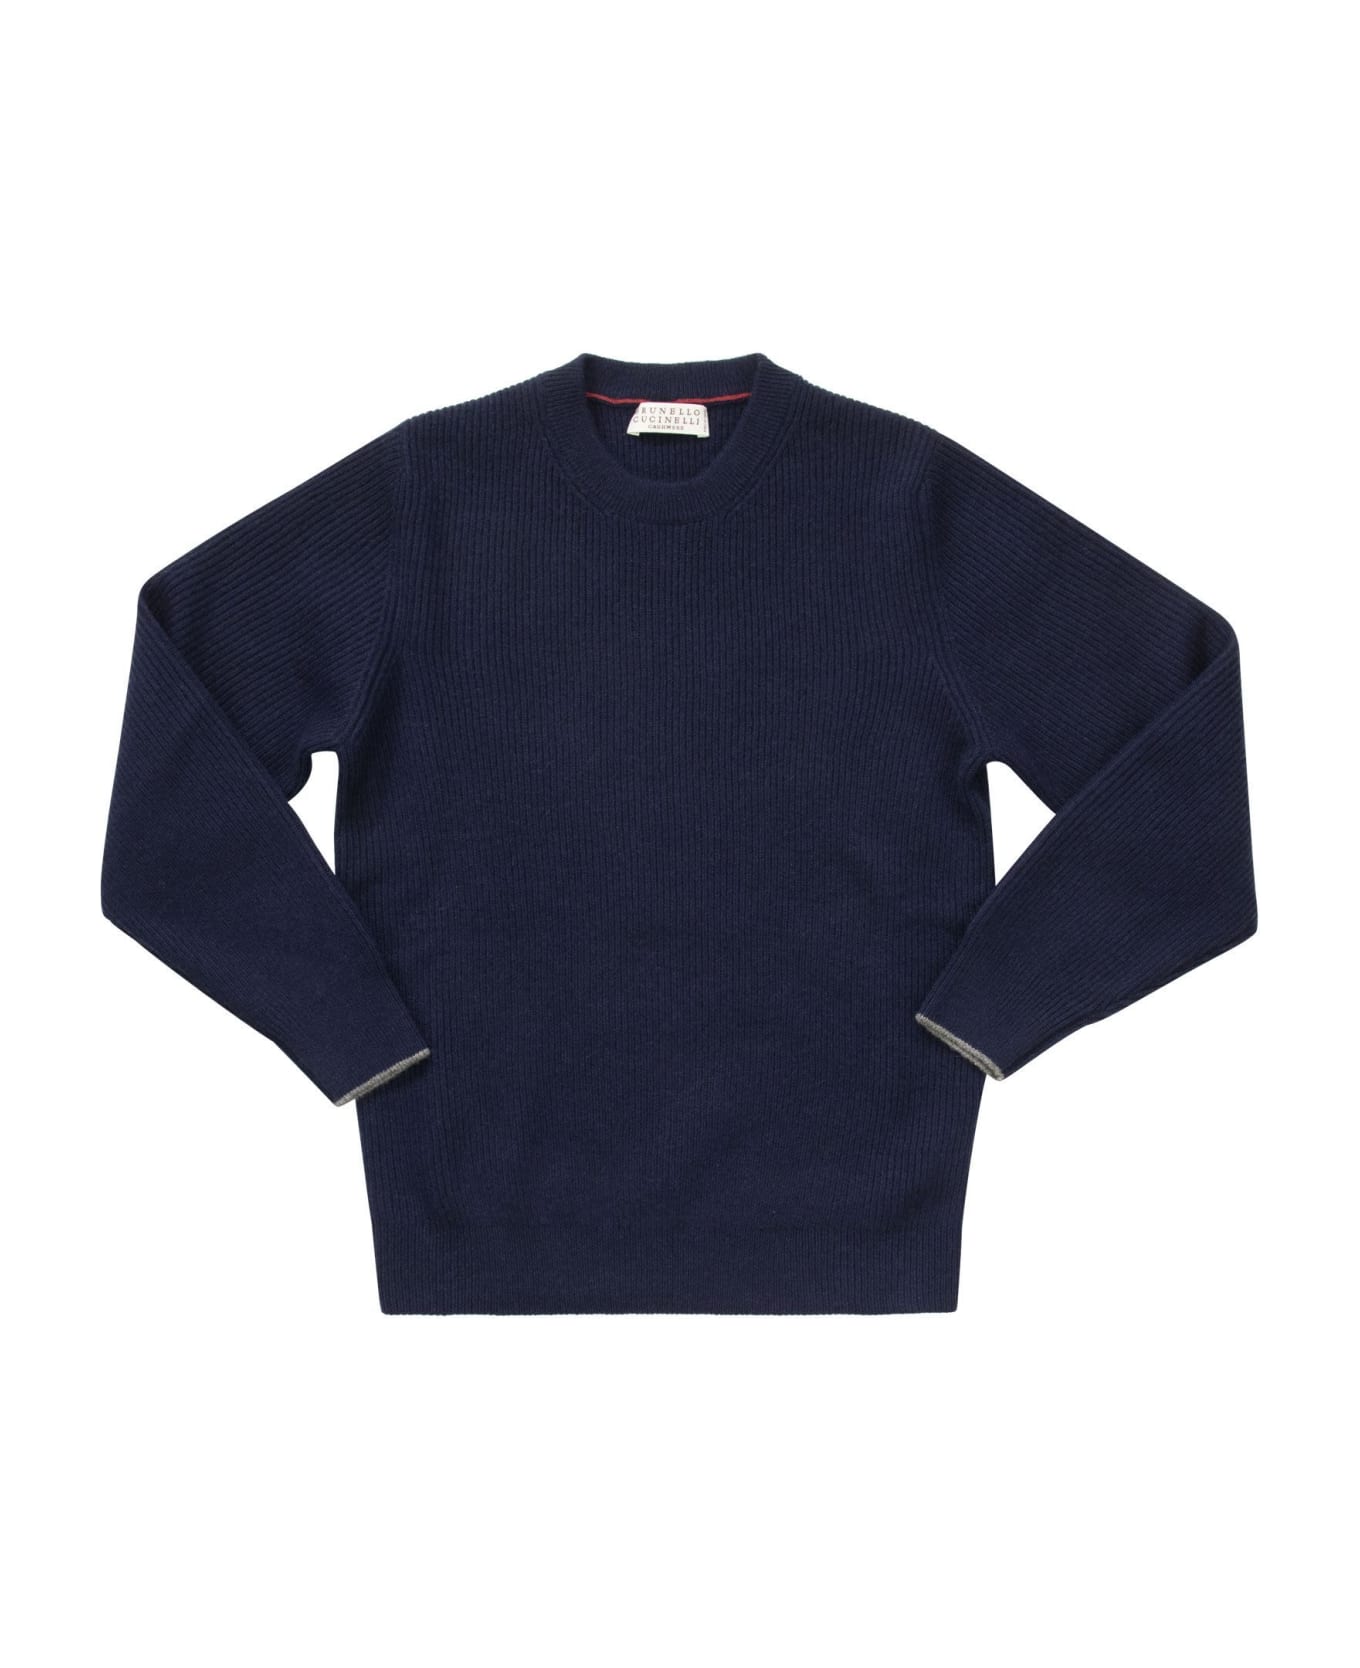 Brunello Cucinelli Cashmere Knitwear - Navy Blue